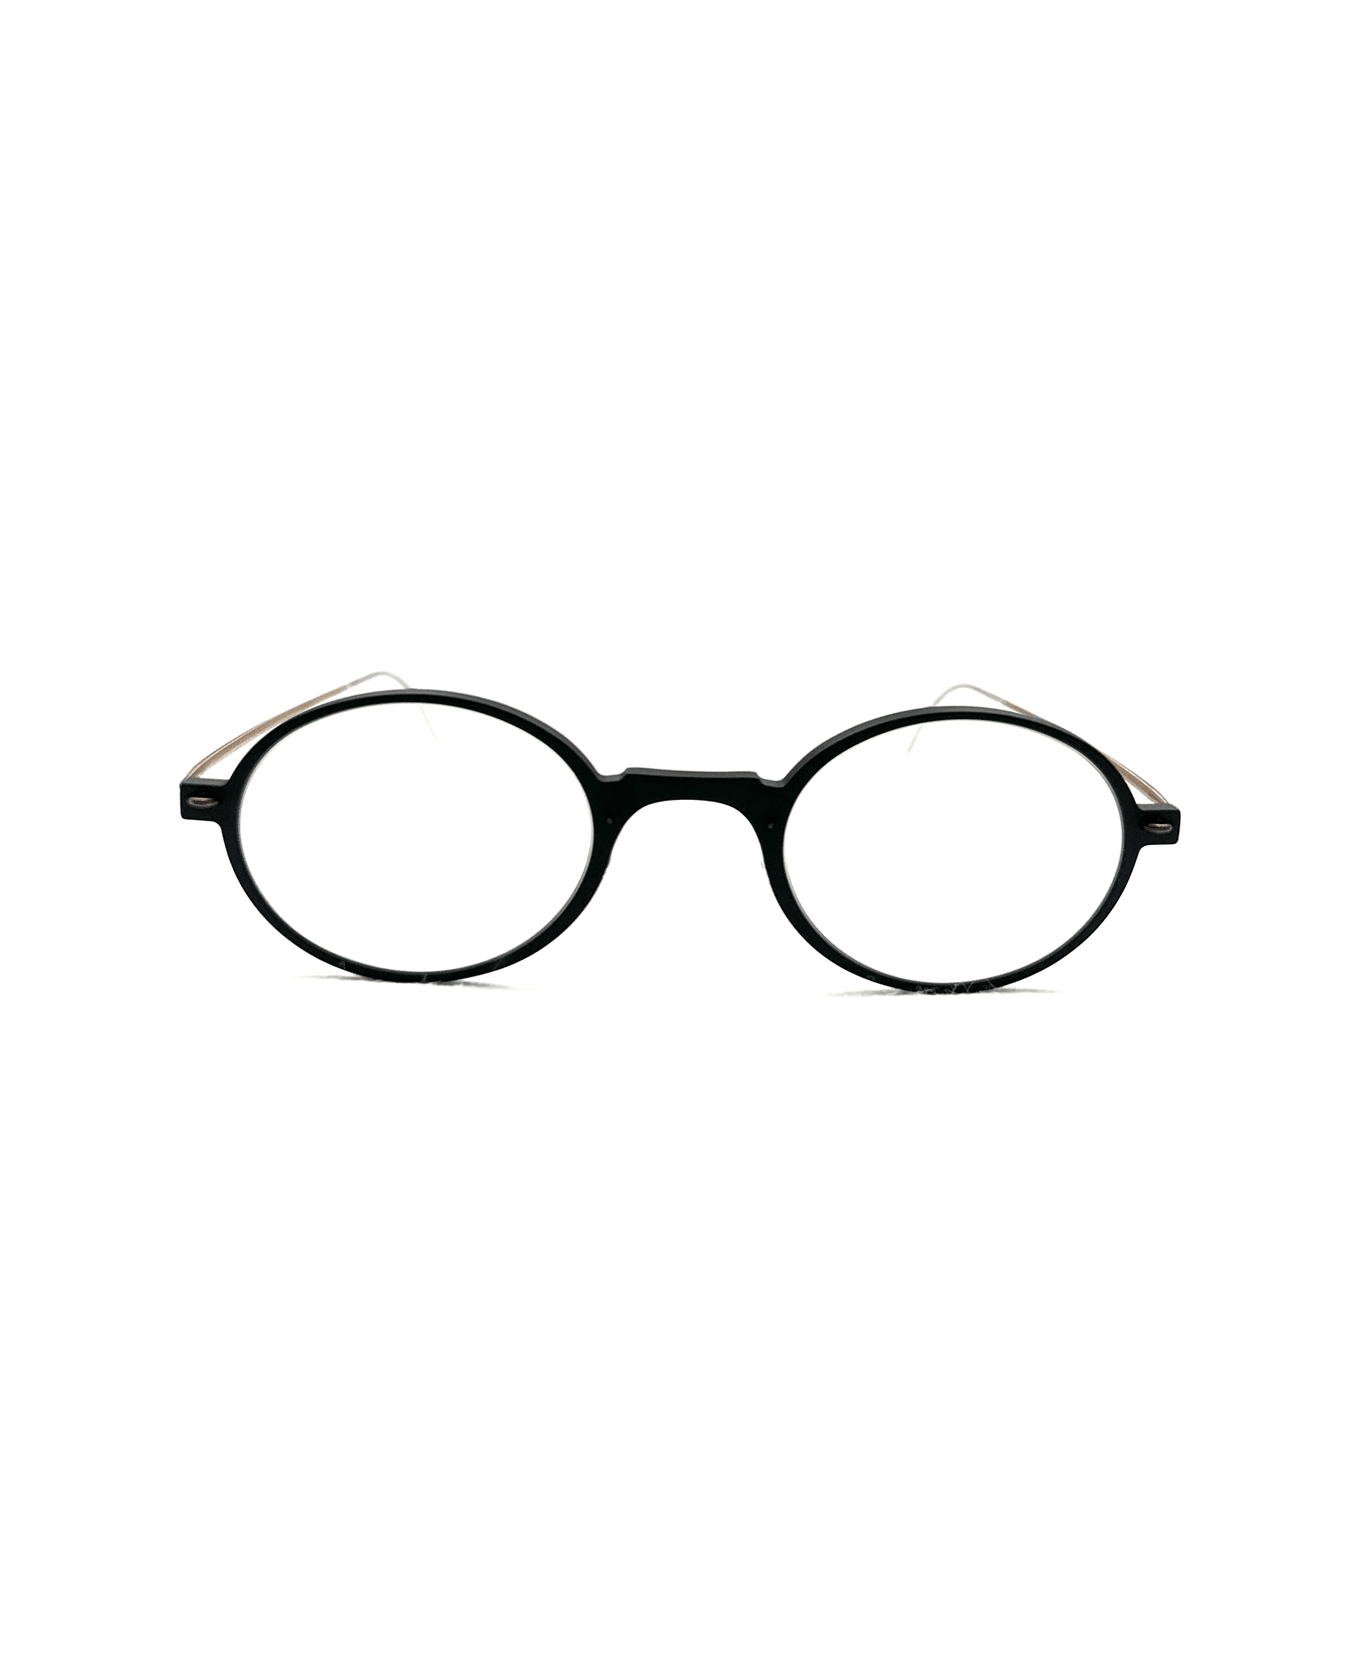 LINDBERG N.o.w. 6508 D16 - U12 Glasses - Nero アイウェア